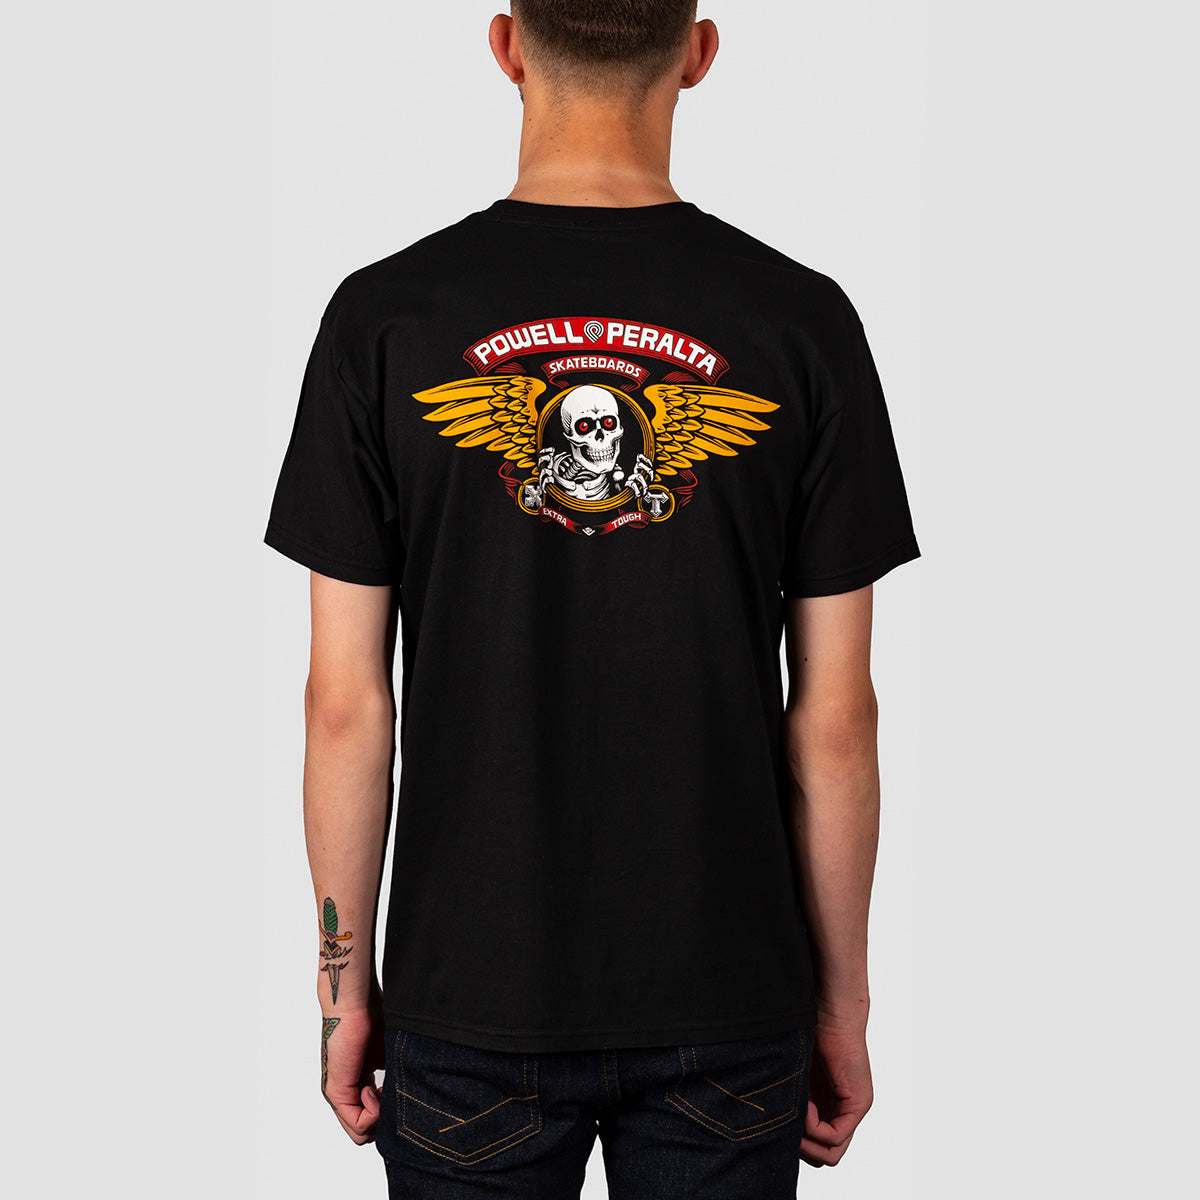 Powell Peralta Winged Ripper T-Shirt Black